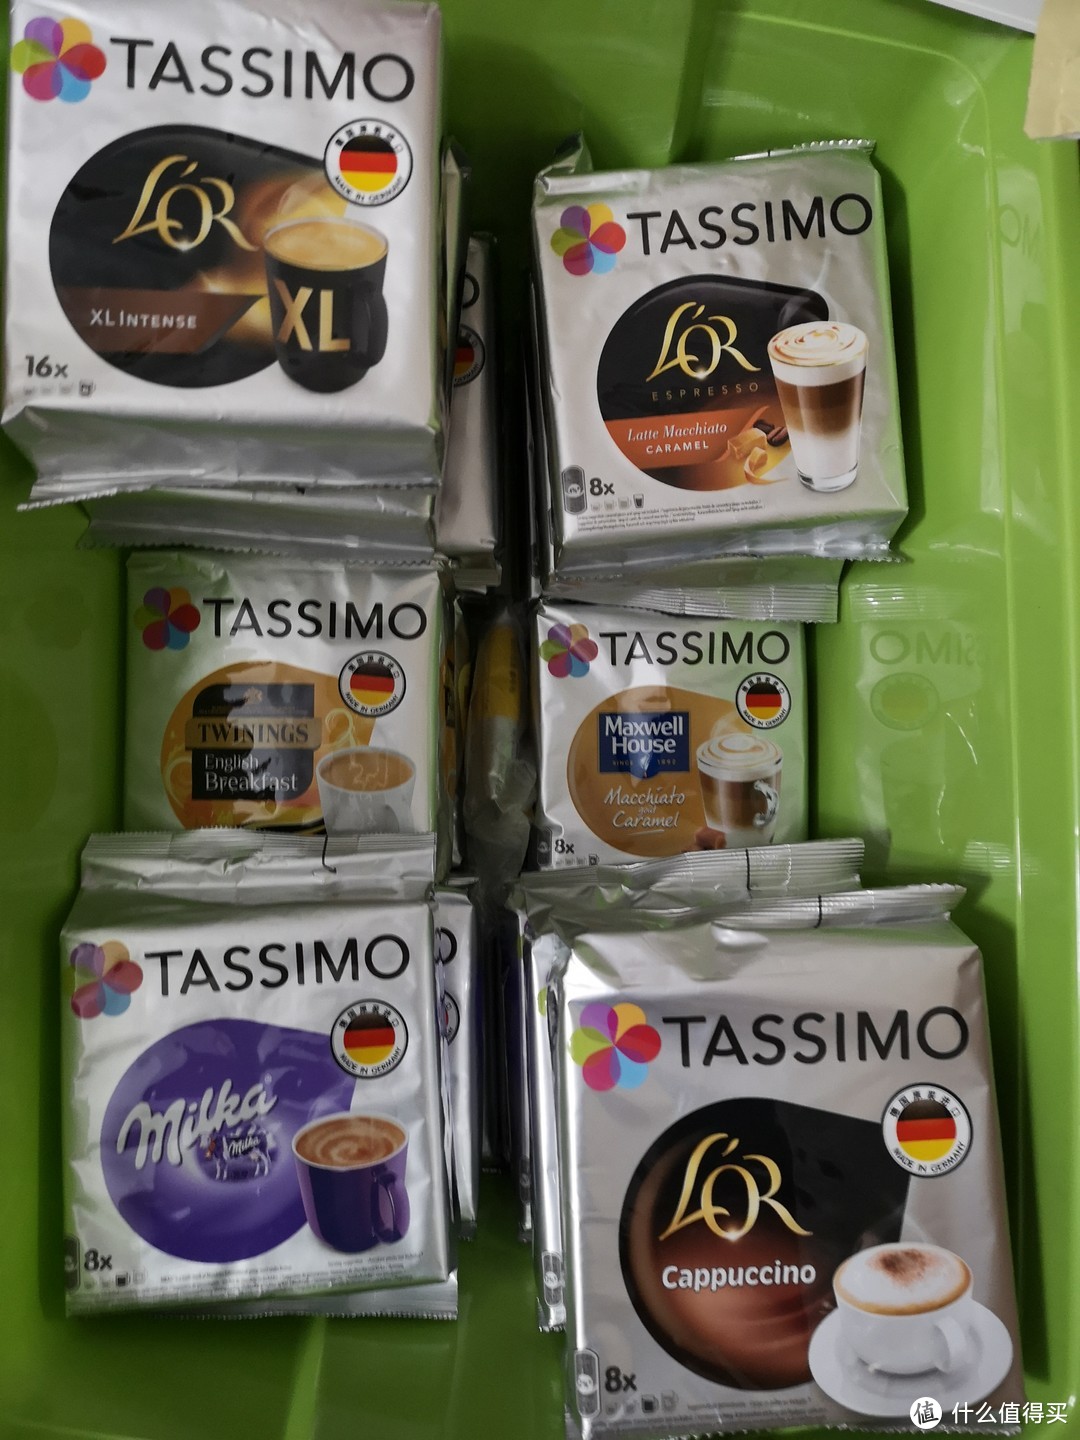 穷懒癌患者的胶囊咖啡机之路—Tassimo入坑指南